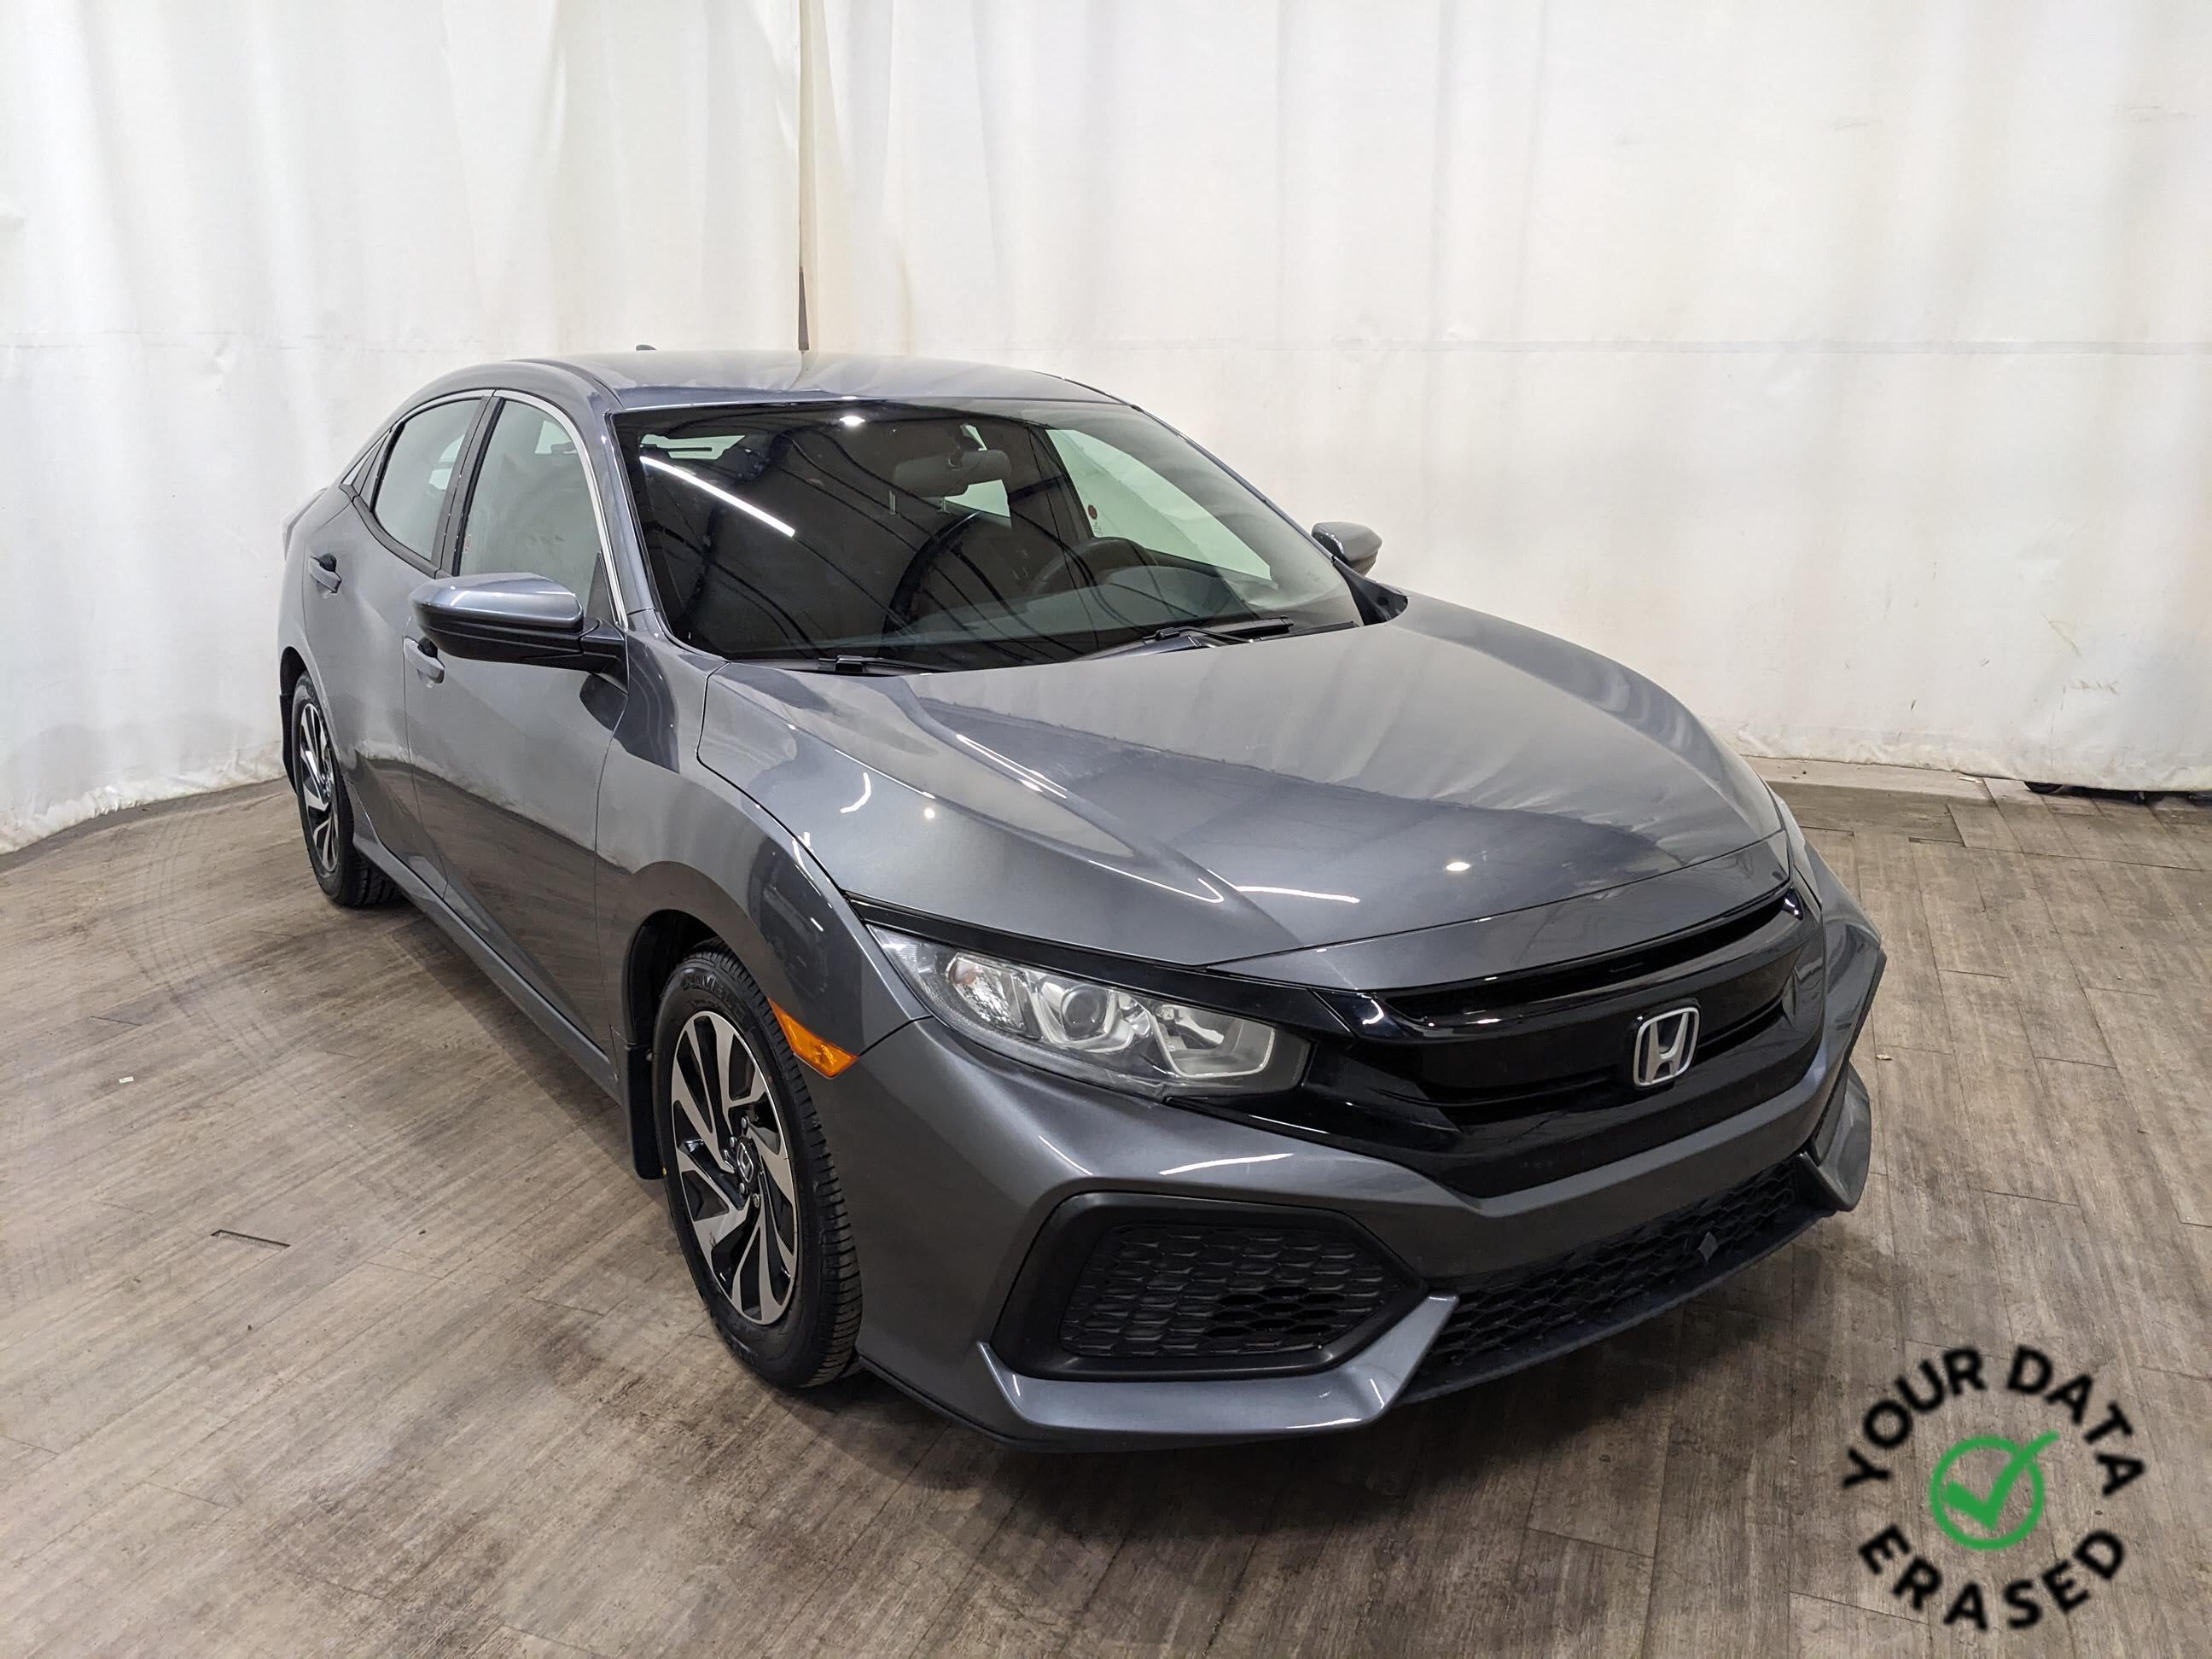 2018 Honda Civic Hatchback LX | Minor Hail Massive Savings!